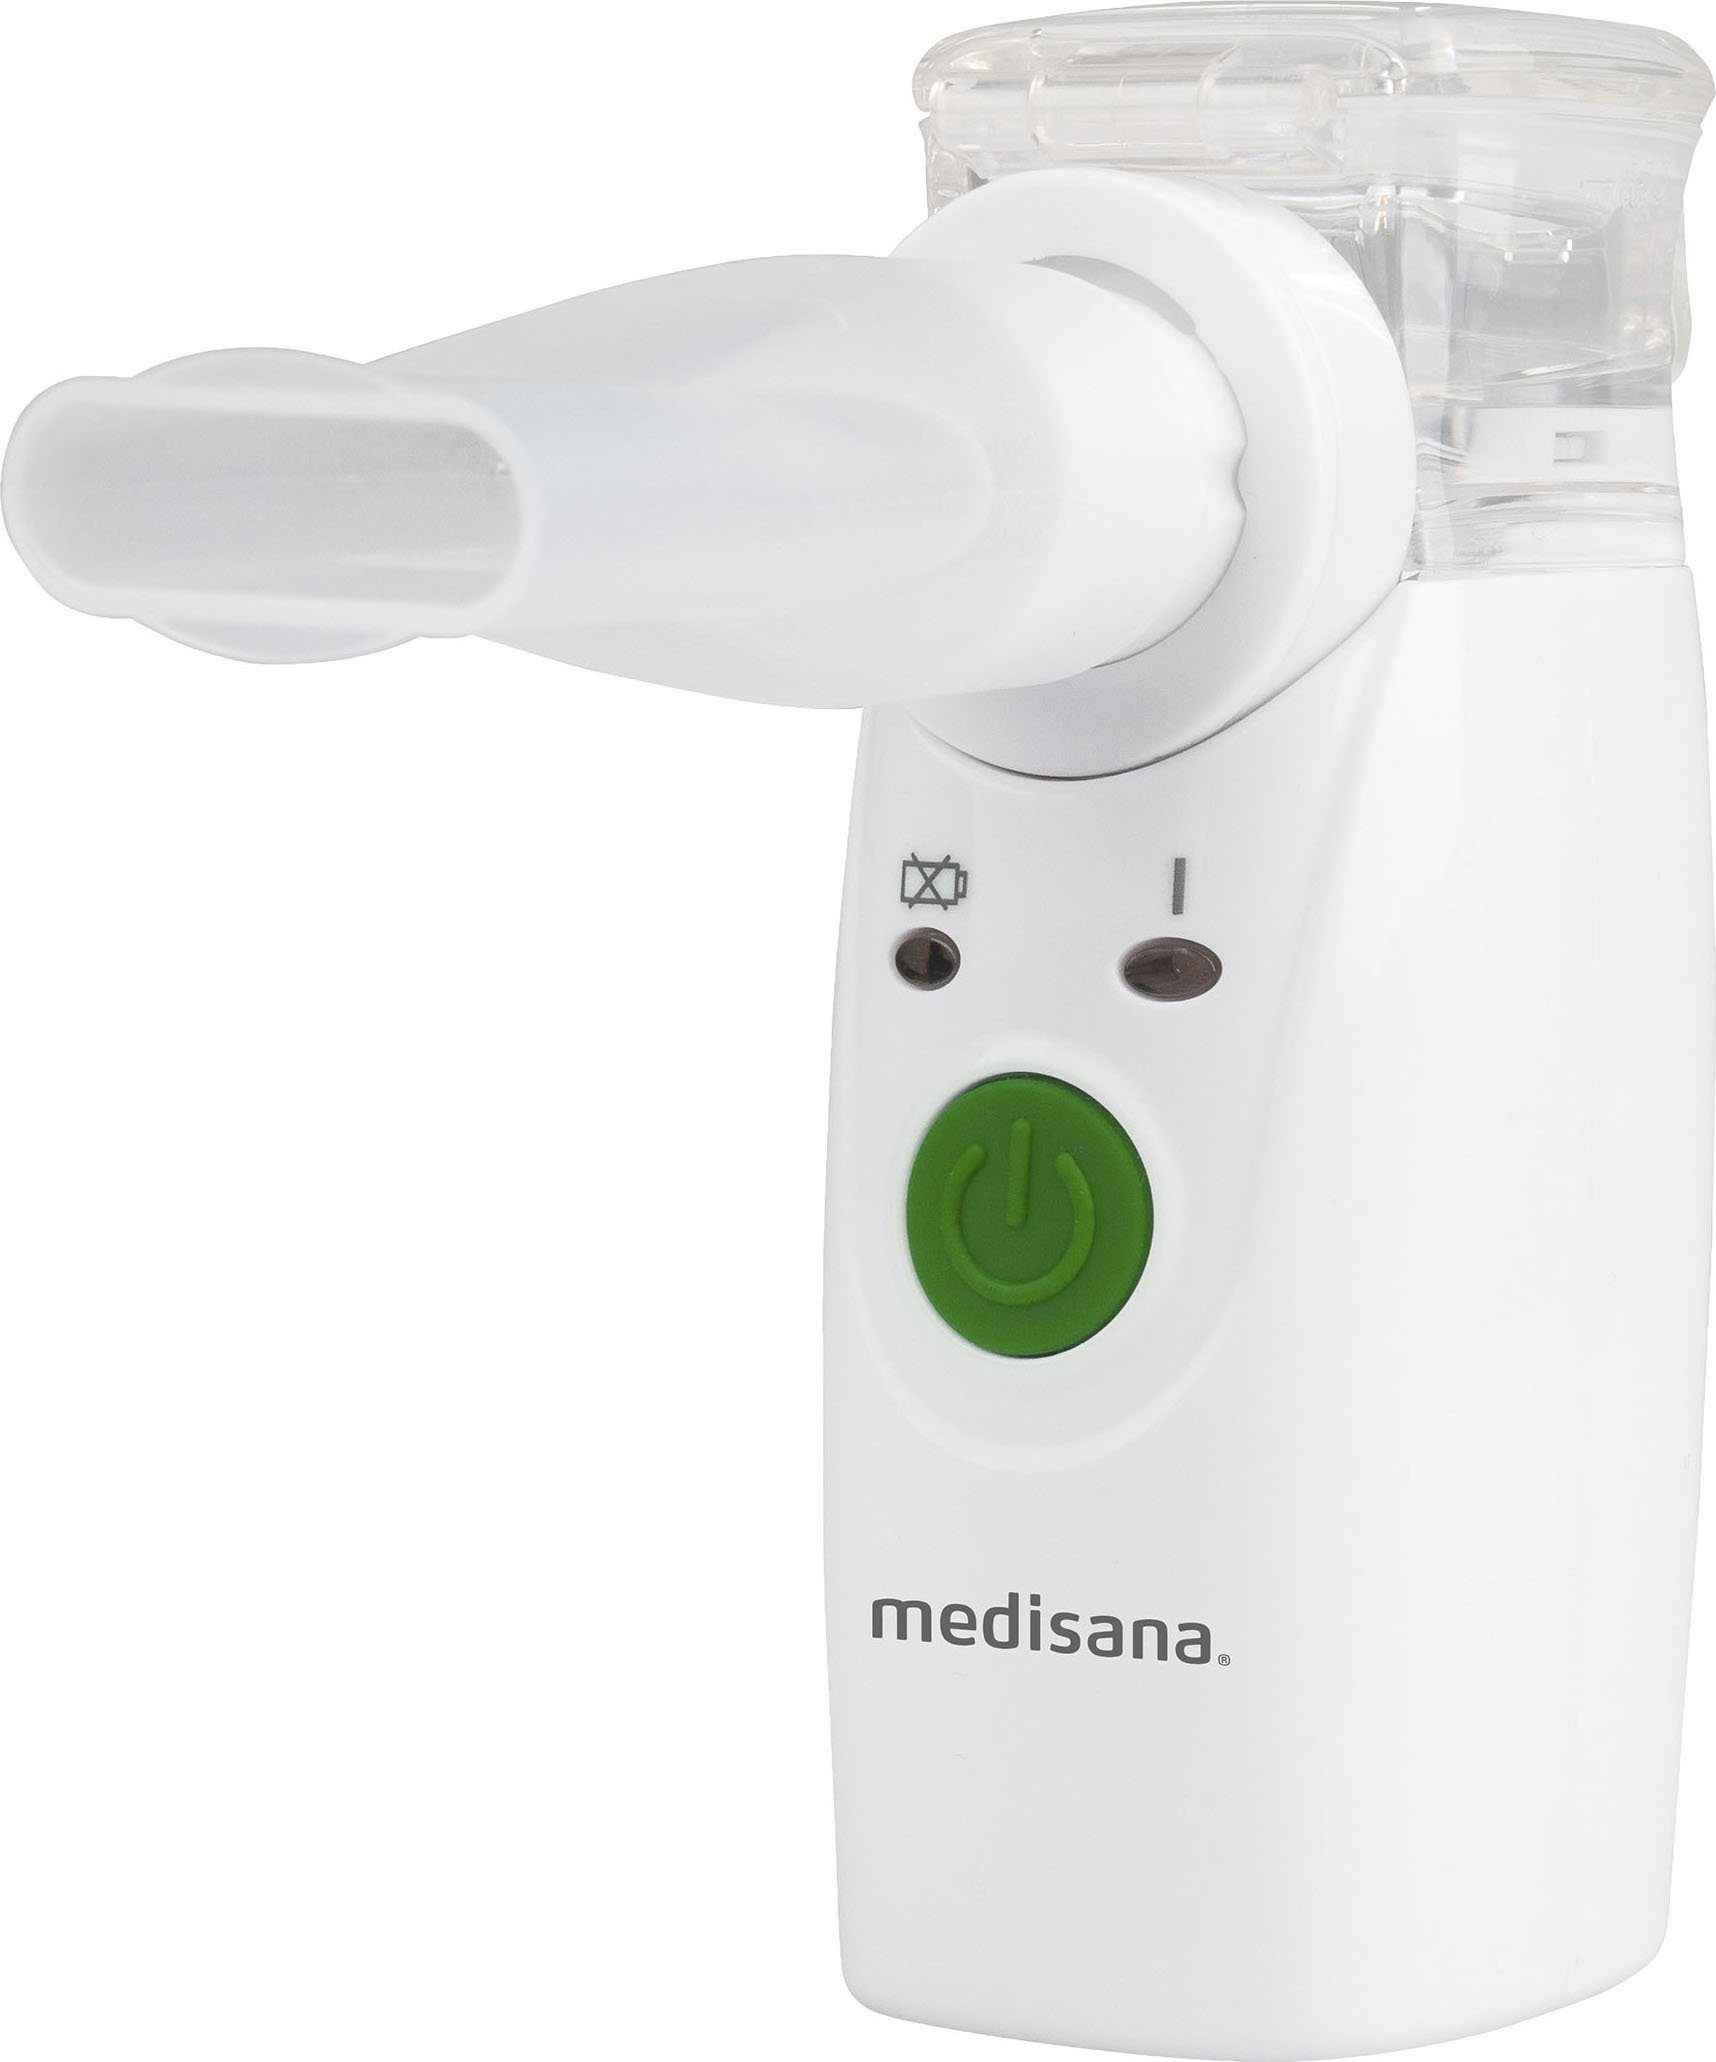 Medisana Inhalationsgerät IN525, Mini-Inhalator